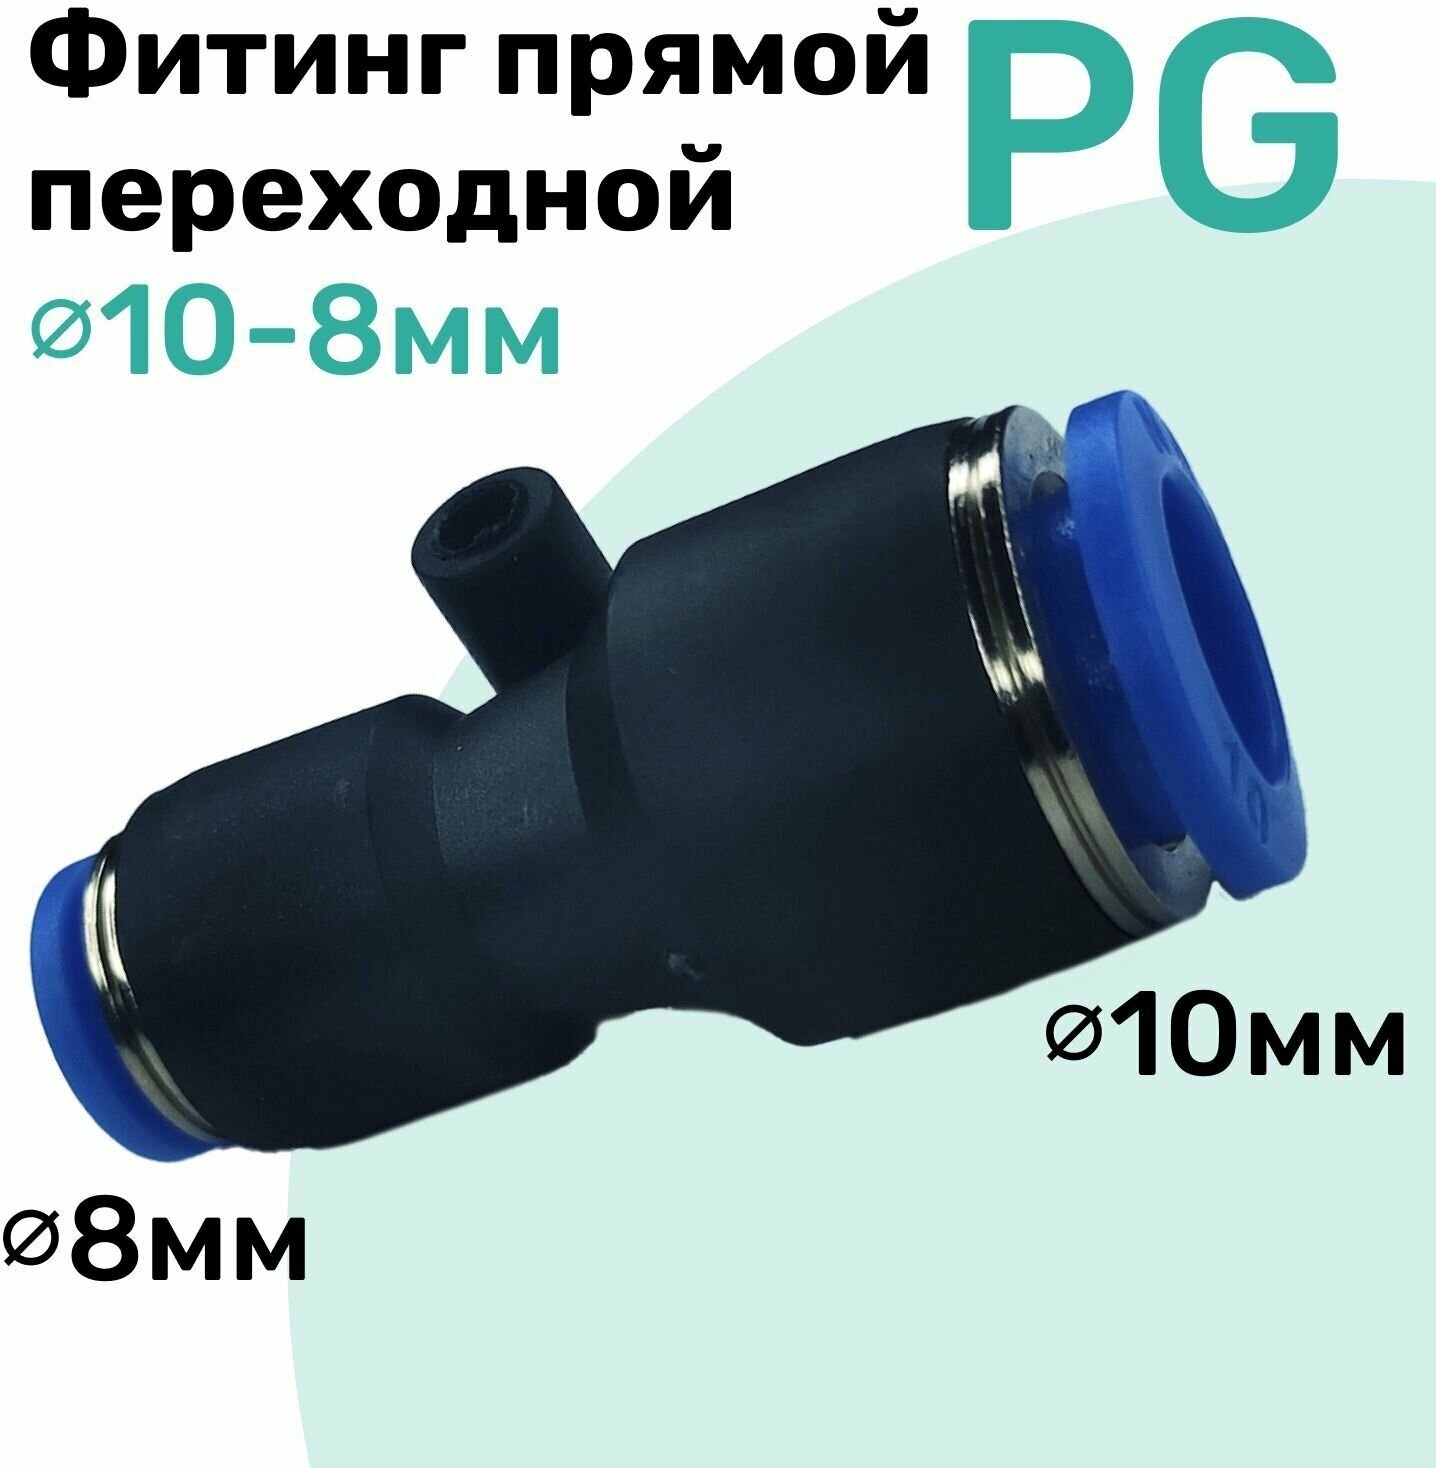 Фитинг прямой переходной цанговый PG 10-8 мм Пневмофитинг NBPT